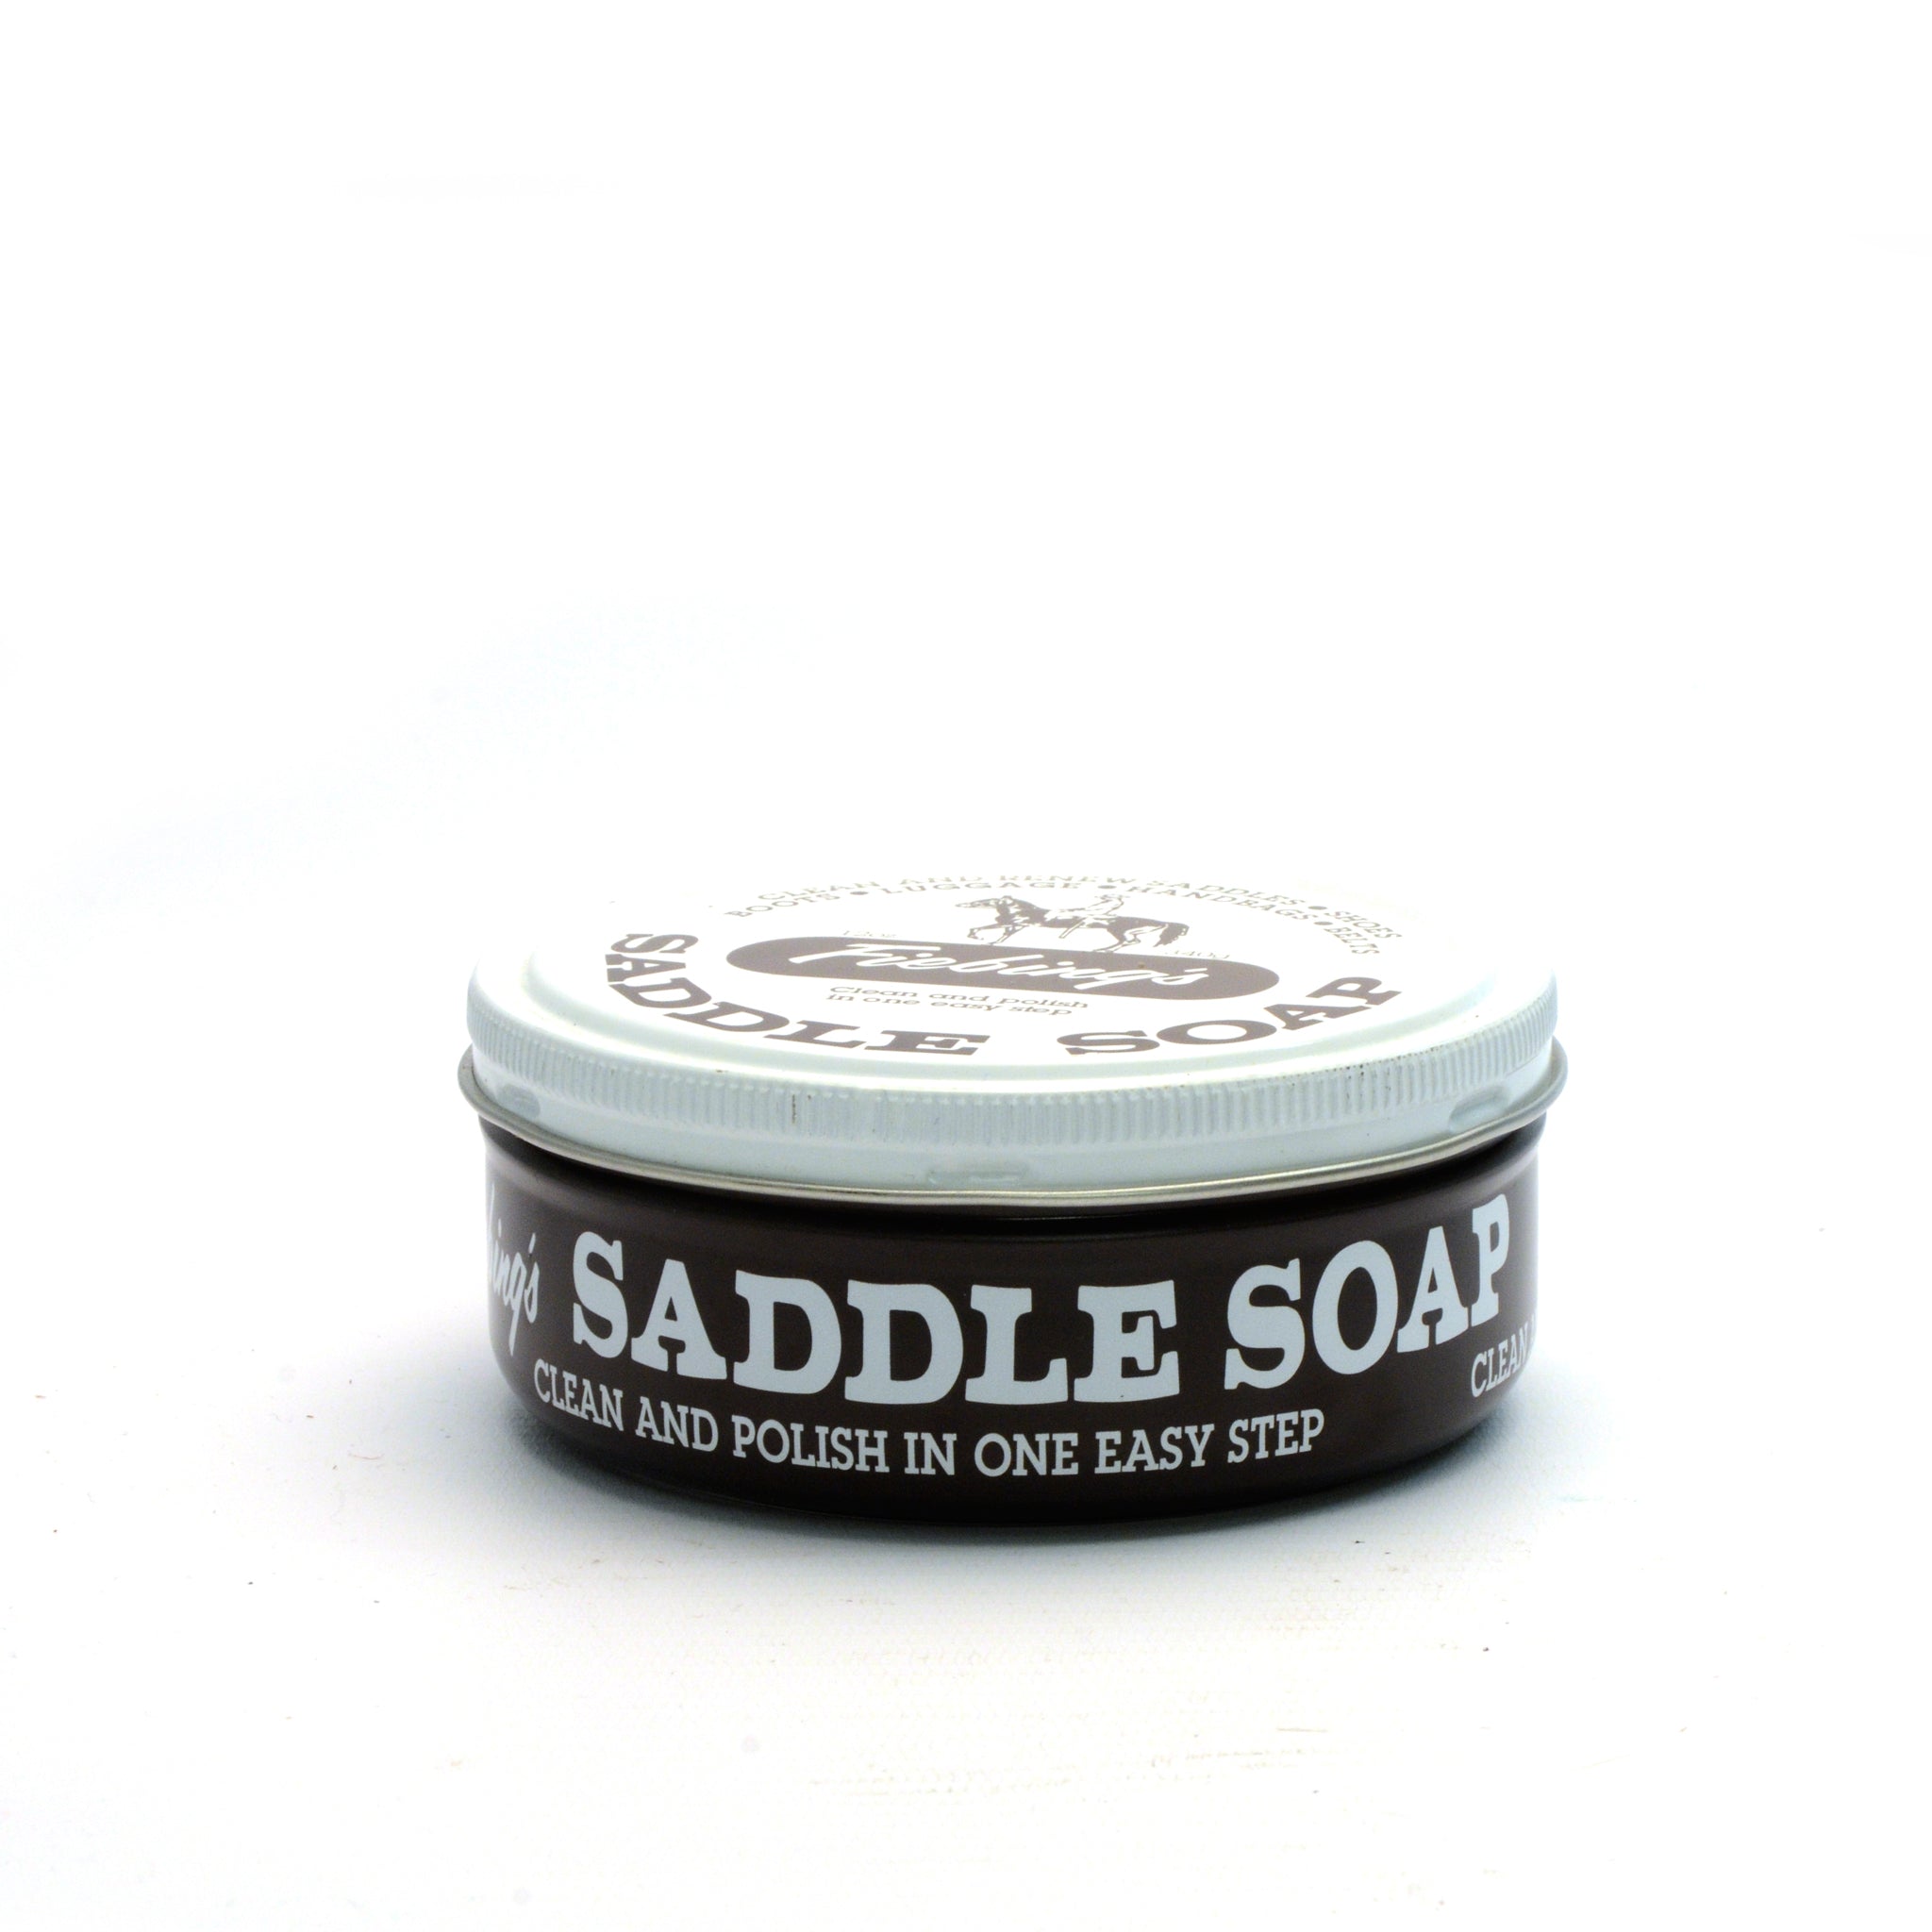 Black Fiebing's Saddle Soap from Identity Leathercraft